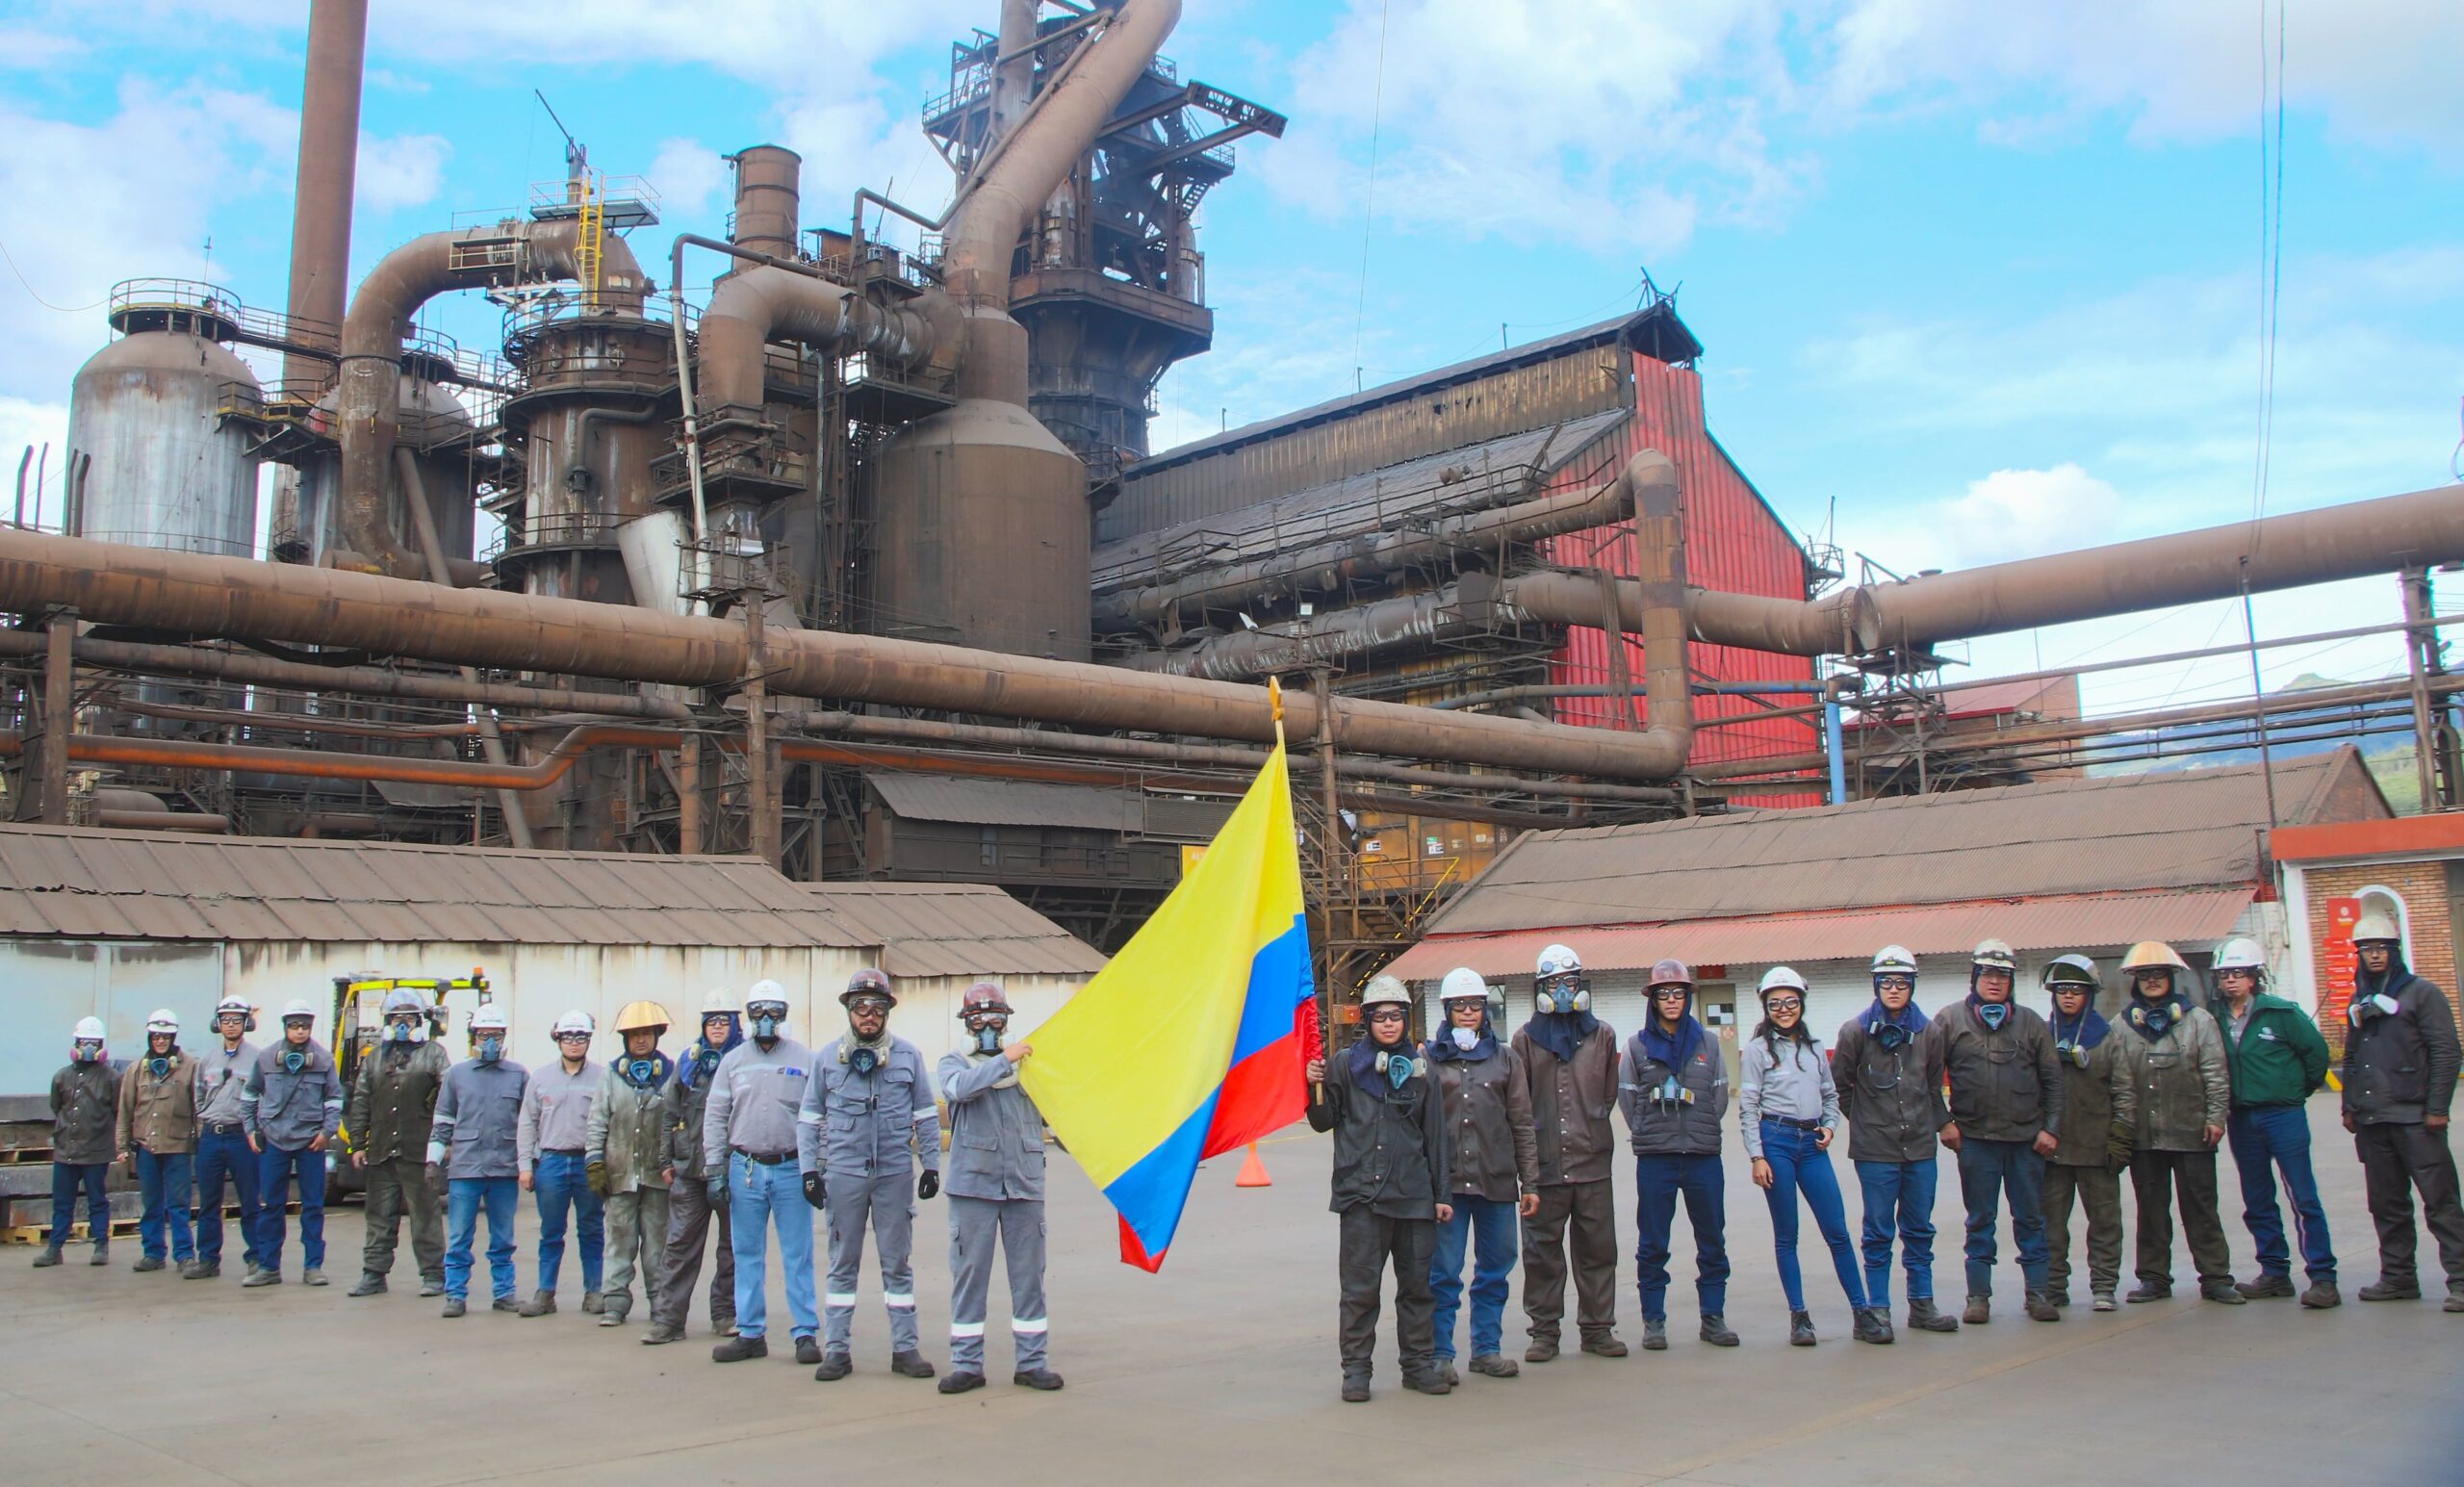  ¡PazdelRío es Colombia!  Se cumple un año del regreso de la compañía a manos colombianas